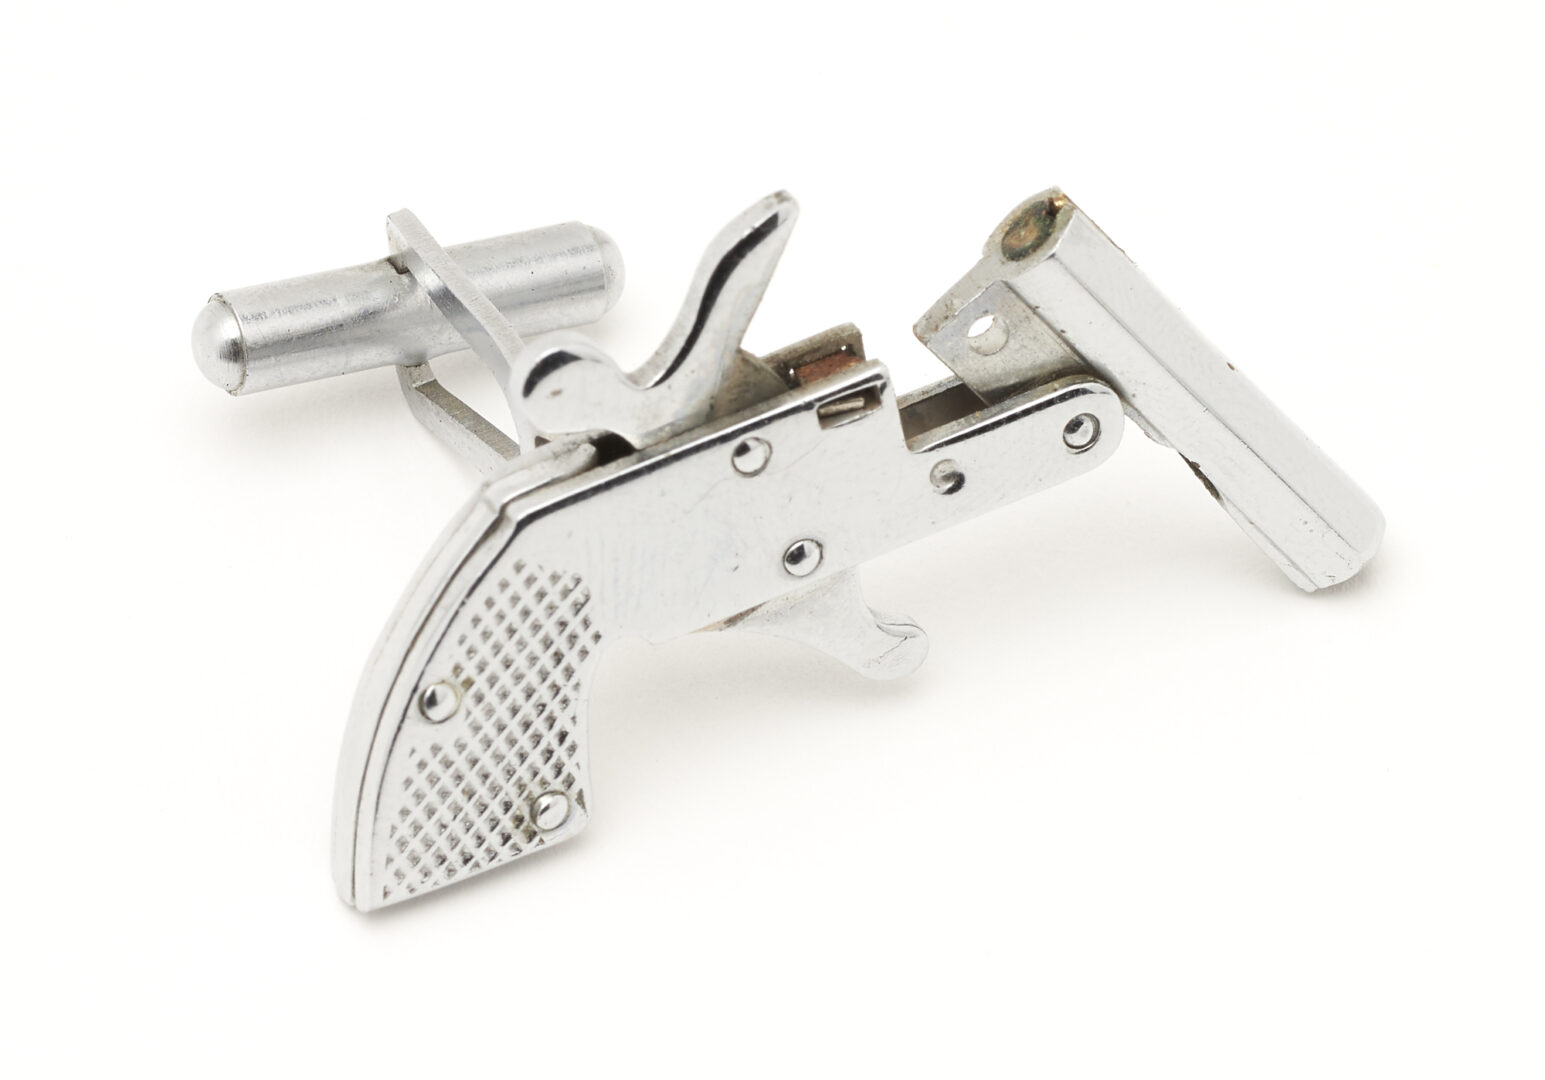 Lot 174: Little Atoms 2mm Pinfire Miniature Pistol Cap Gun Cufflinks